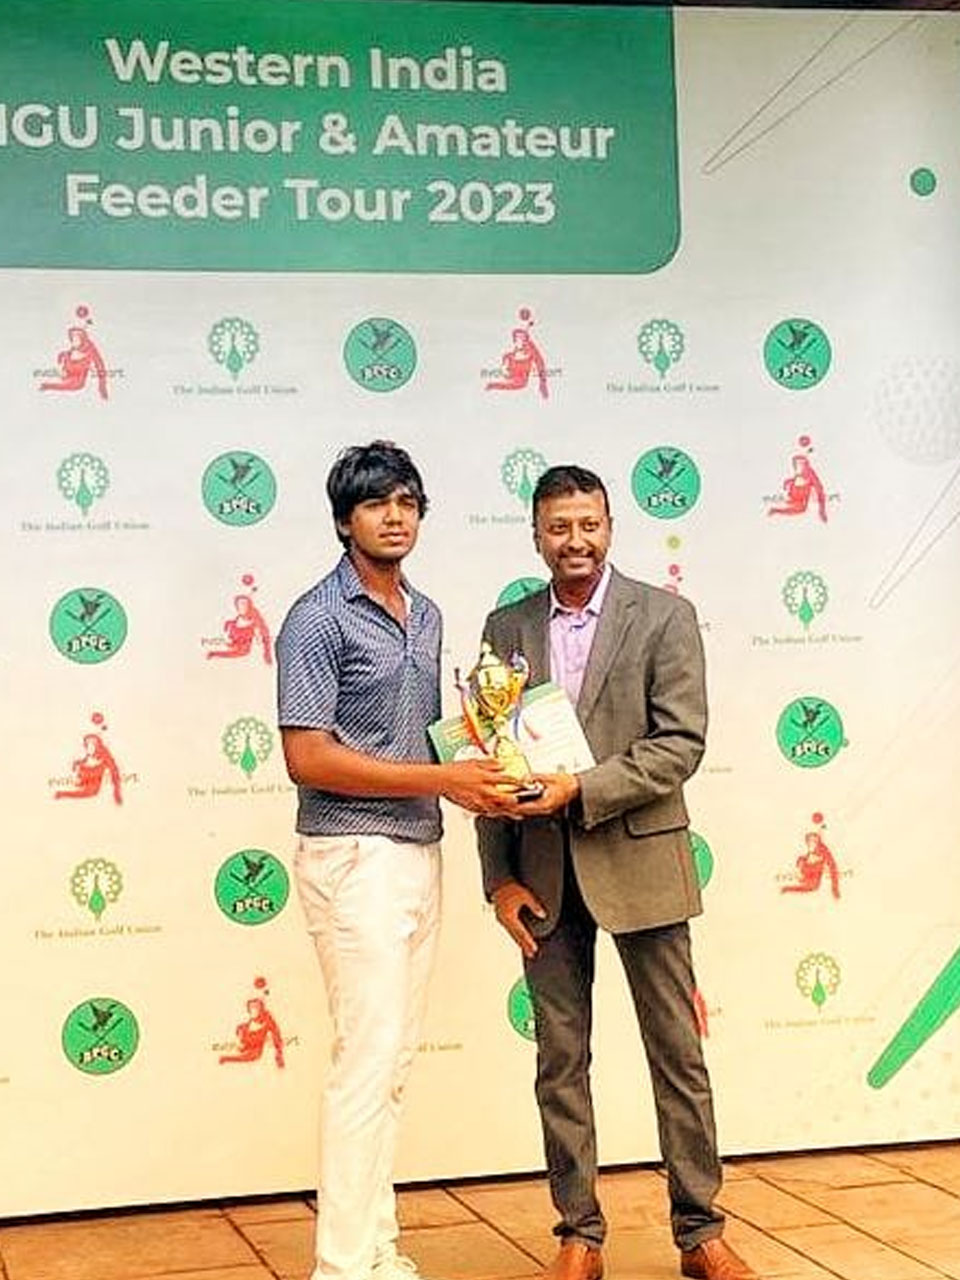 Shamit Dakhane finished 2nd at the Western India IGU Junior & Amateur Feeder Tour